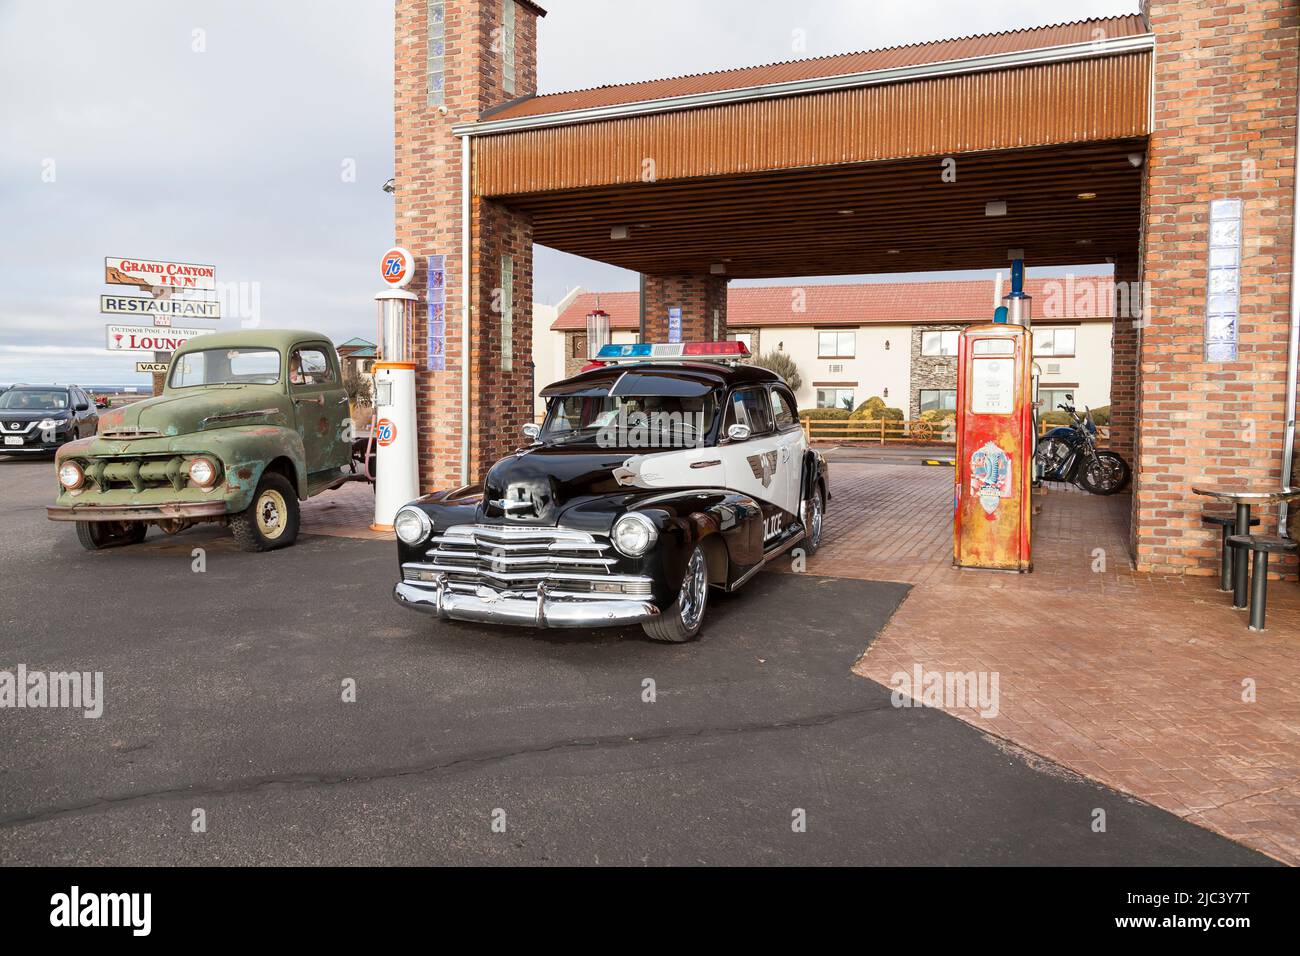 1948 klassischer Chevrolet-Polizeiwagen und ein alter Chevrolet-Lastwagen, der an einer historischen Tankstelle in Valle, Arizona, ausgestellt wurde. USA Stockfoto